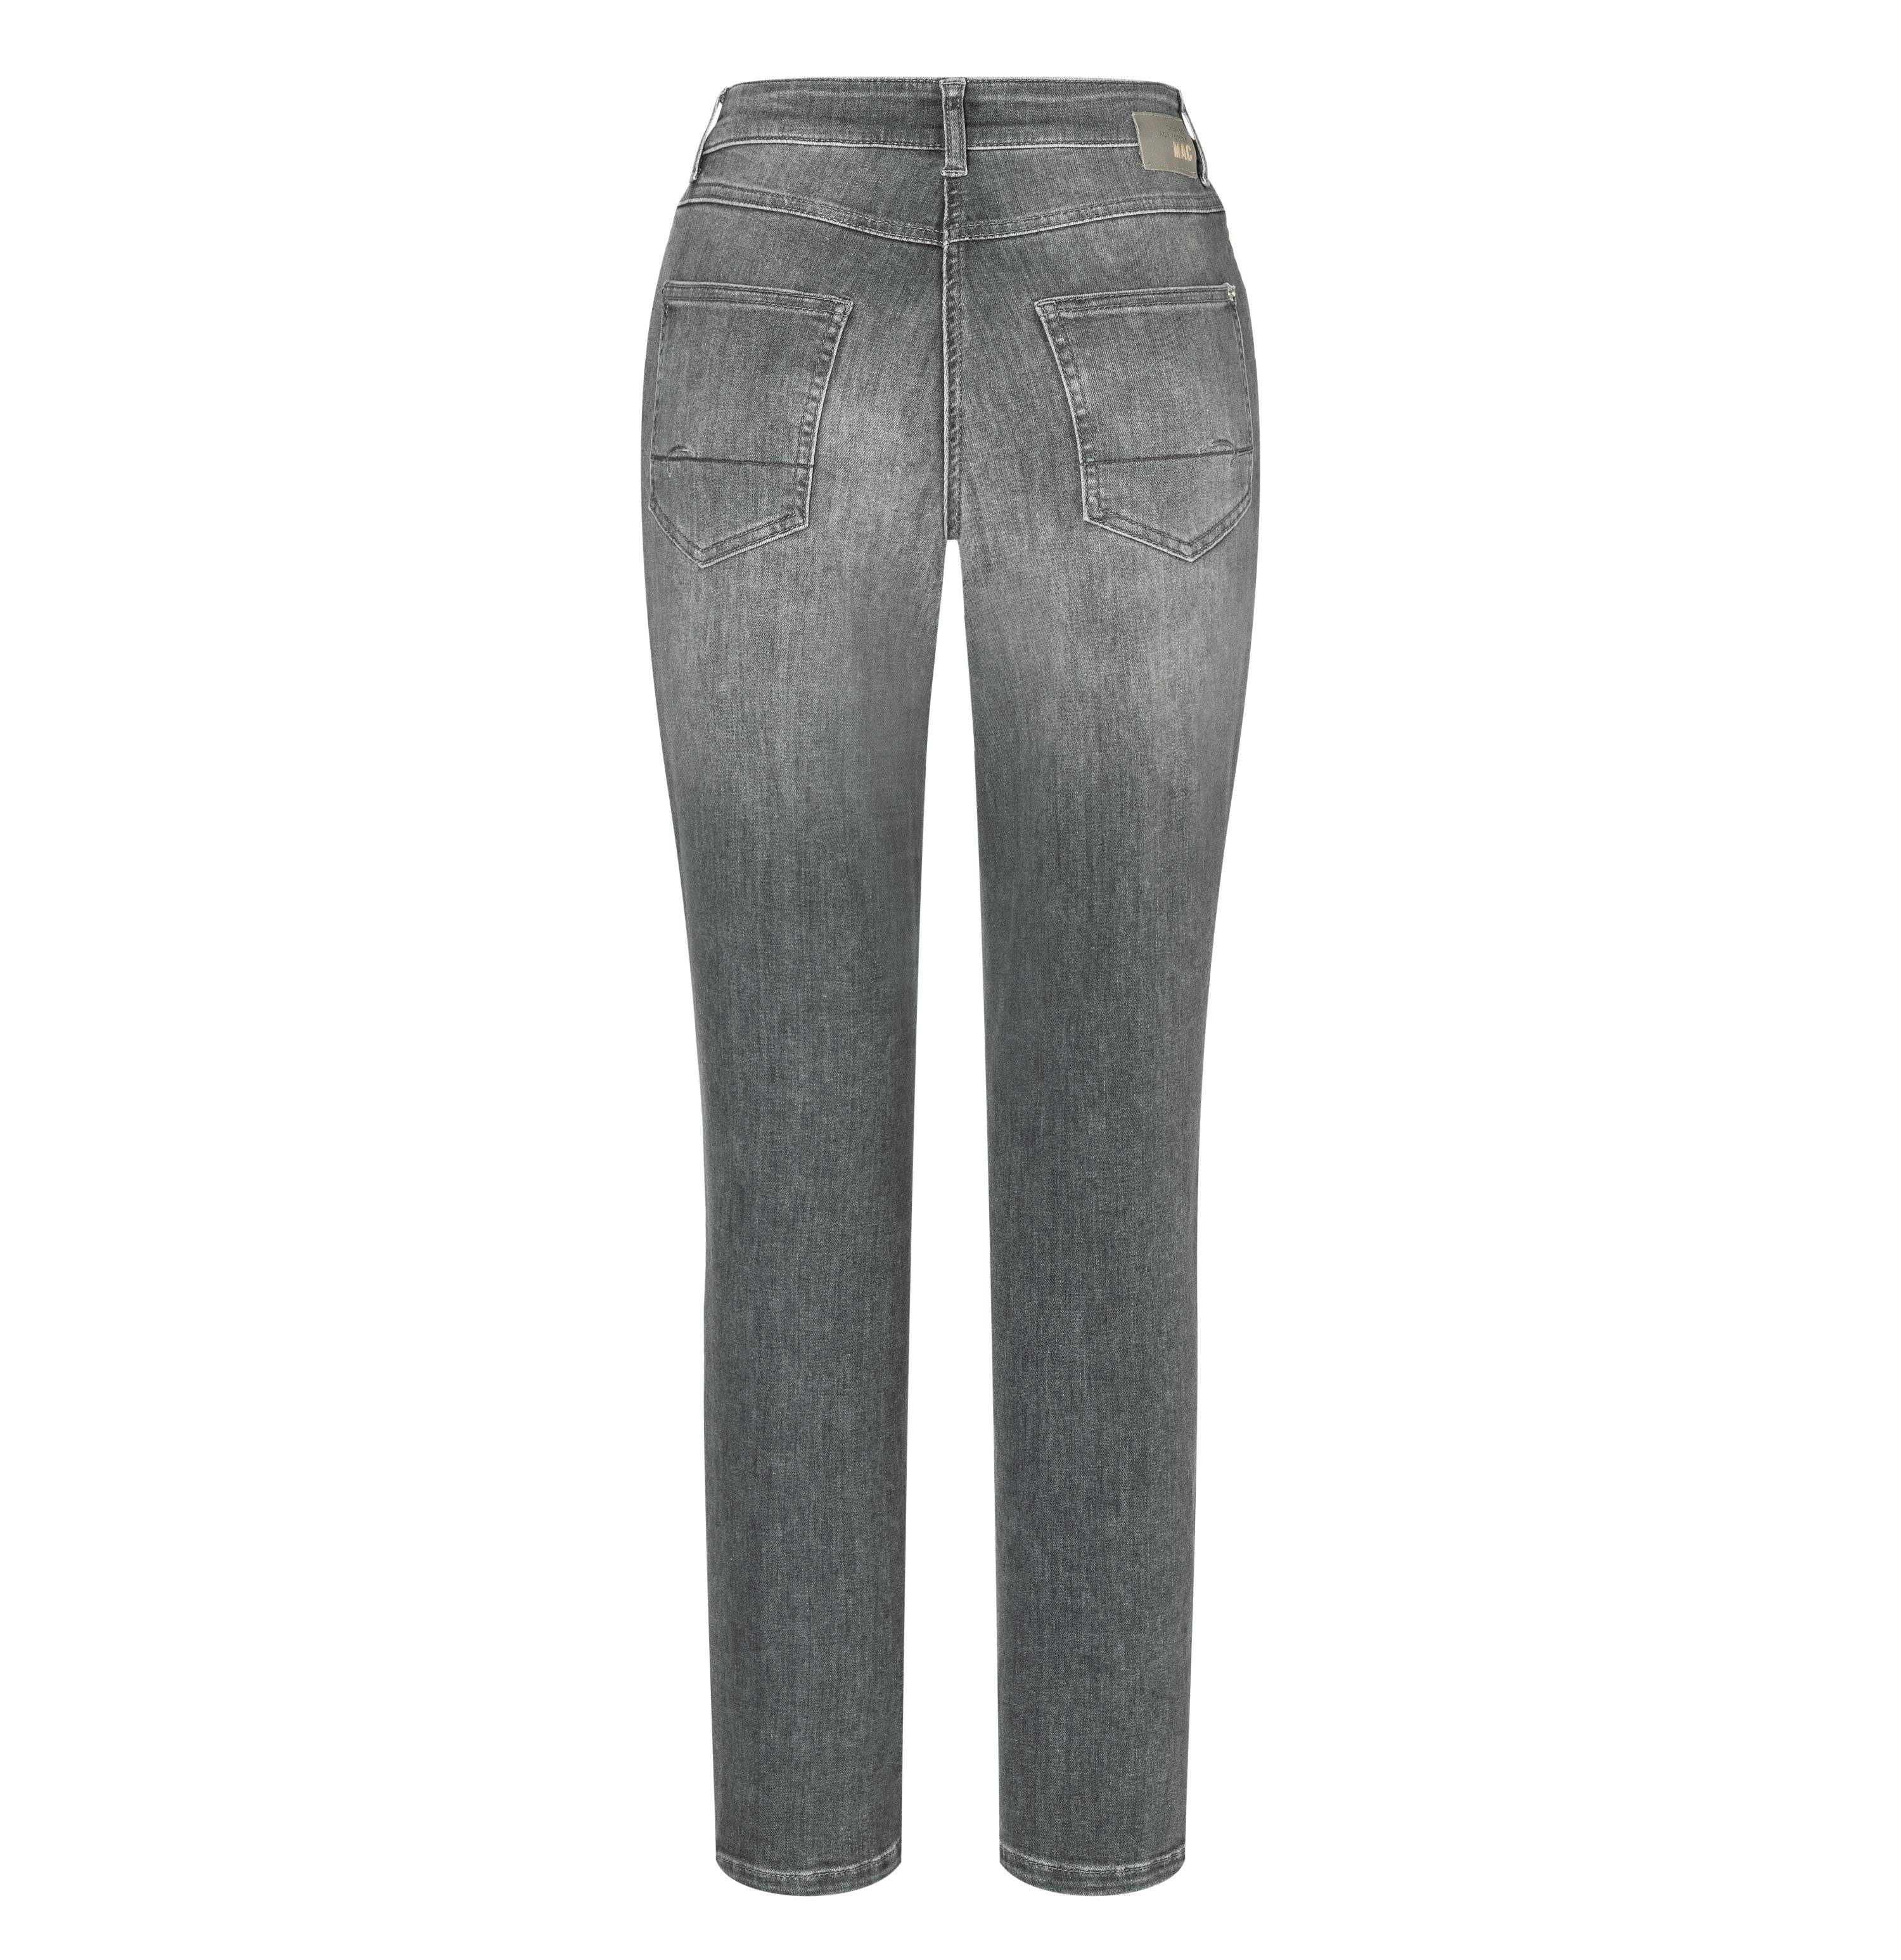 MAC Stretch-Jeans MAC MELANIE D339 grey wash summer 5040-87-0389